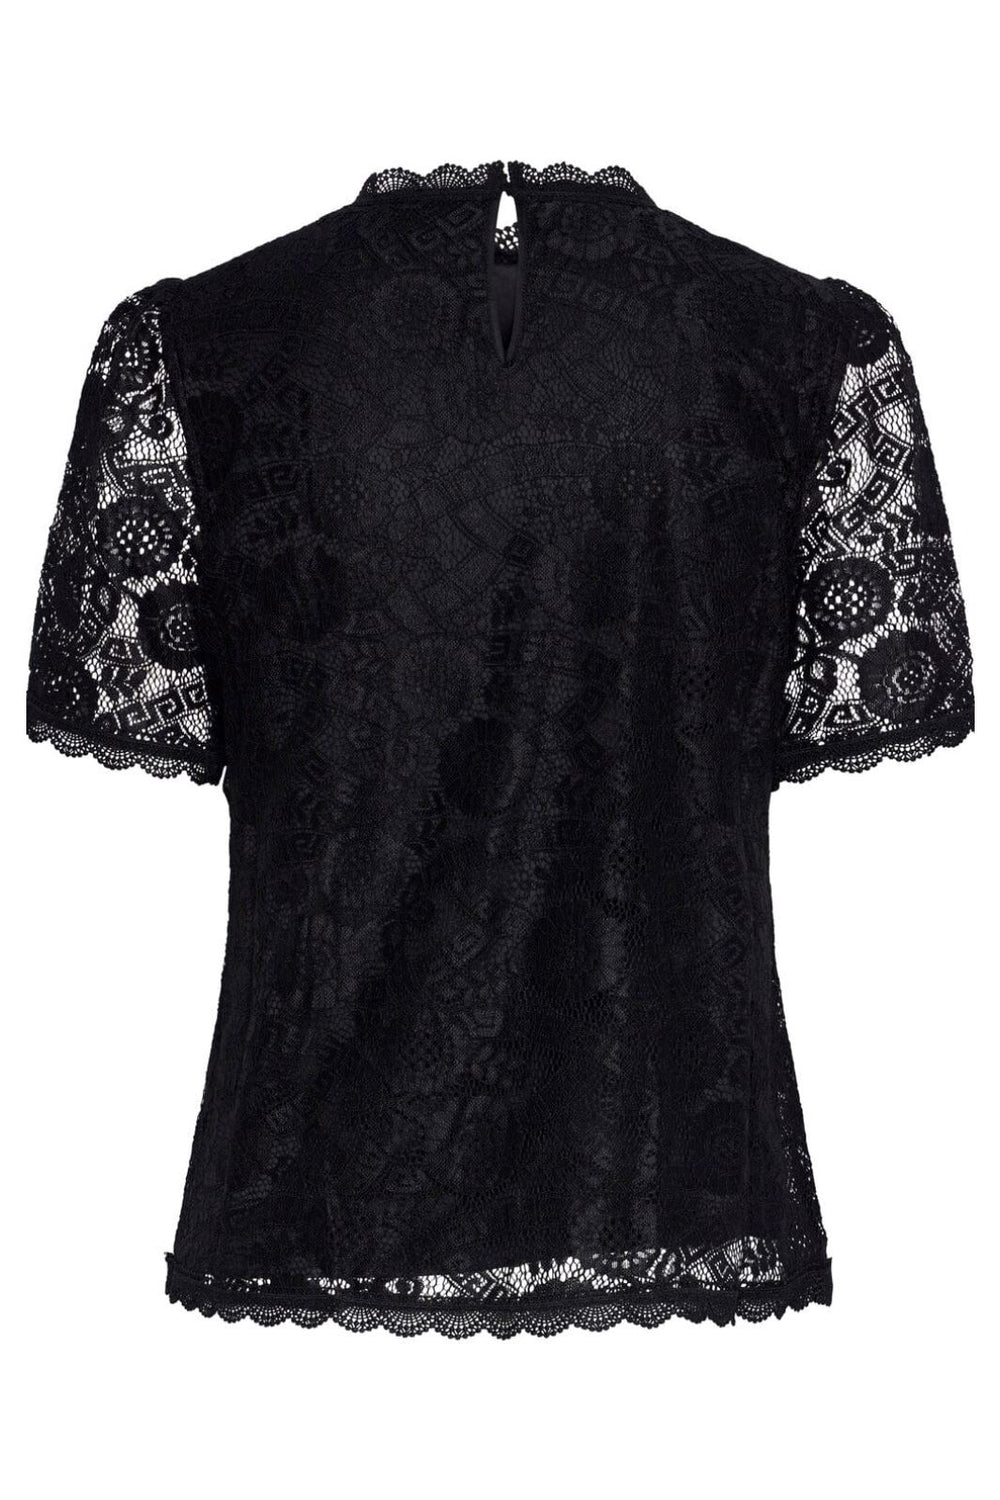 Pieces - Pcolline Ss Lace Top - 4459324 Black T-shirts 